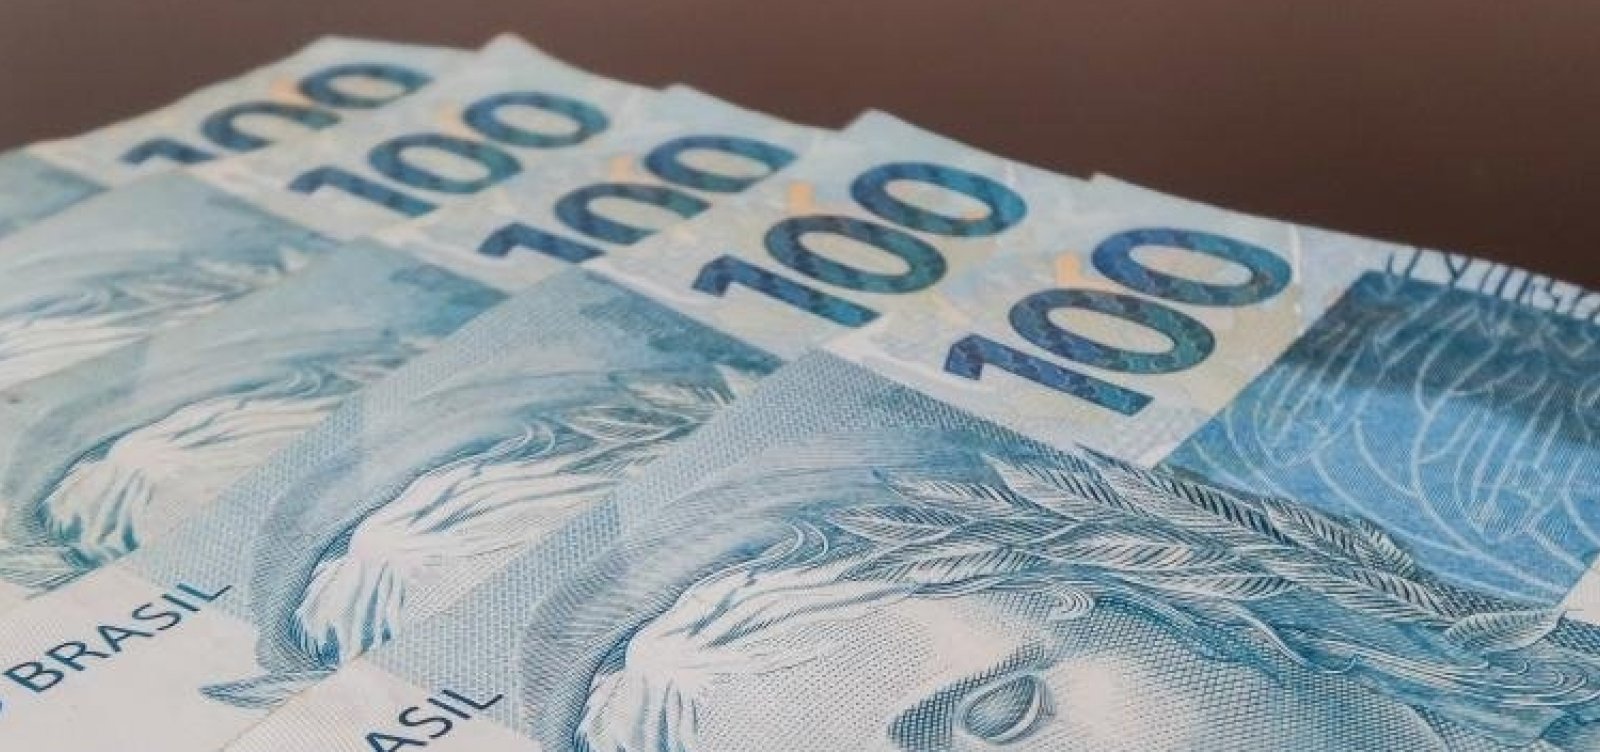 Governo prevê rombo acima de R$ 900 bilhões nas contas públicas em 2020